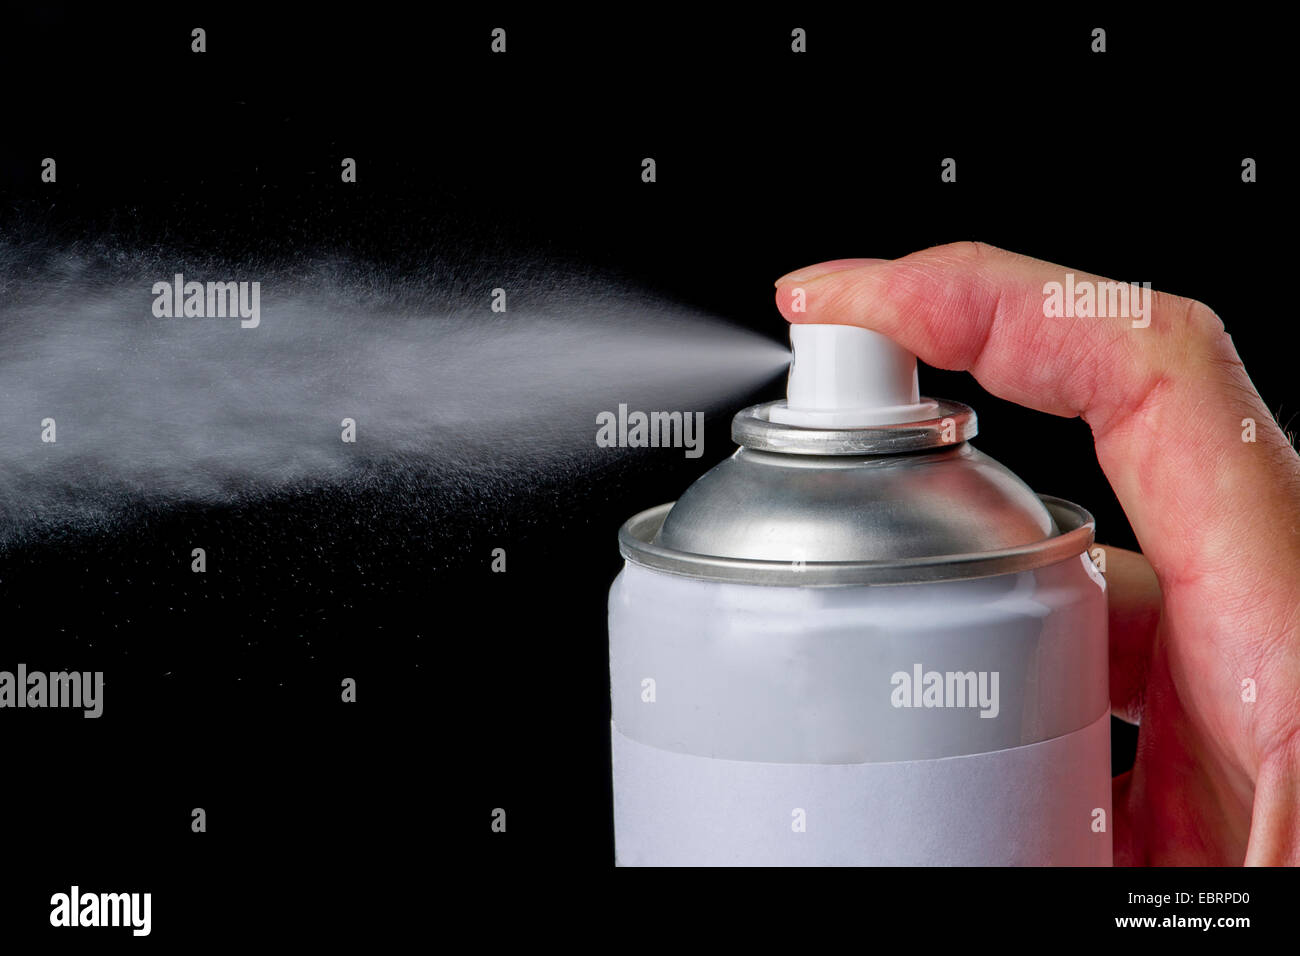 Bomboletta spray immagini e fotografie stock ad alta risoluzione - Alamy